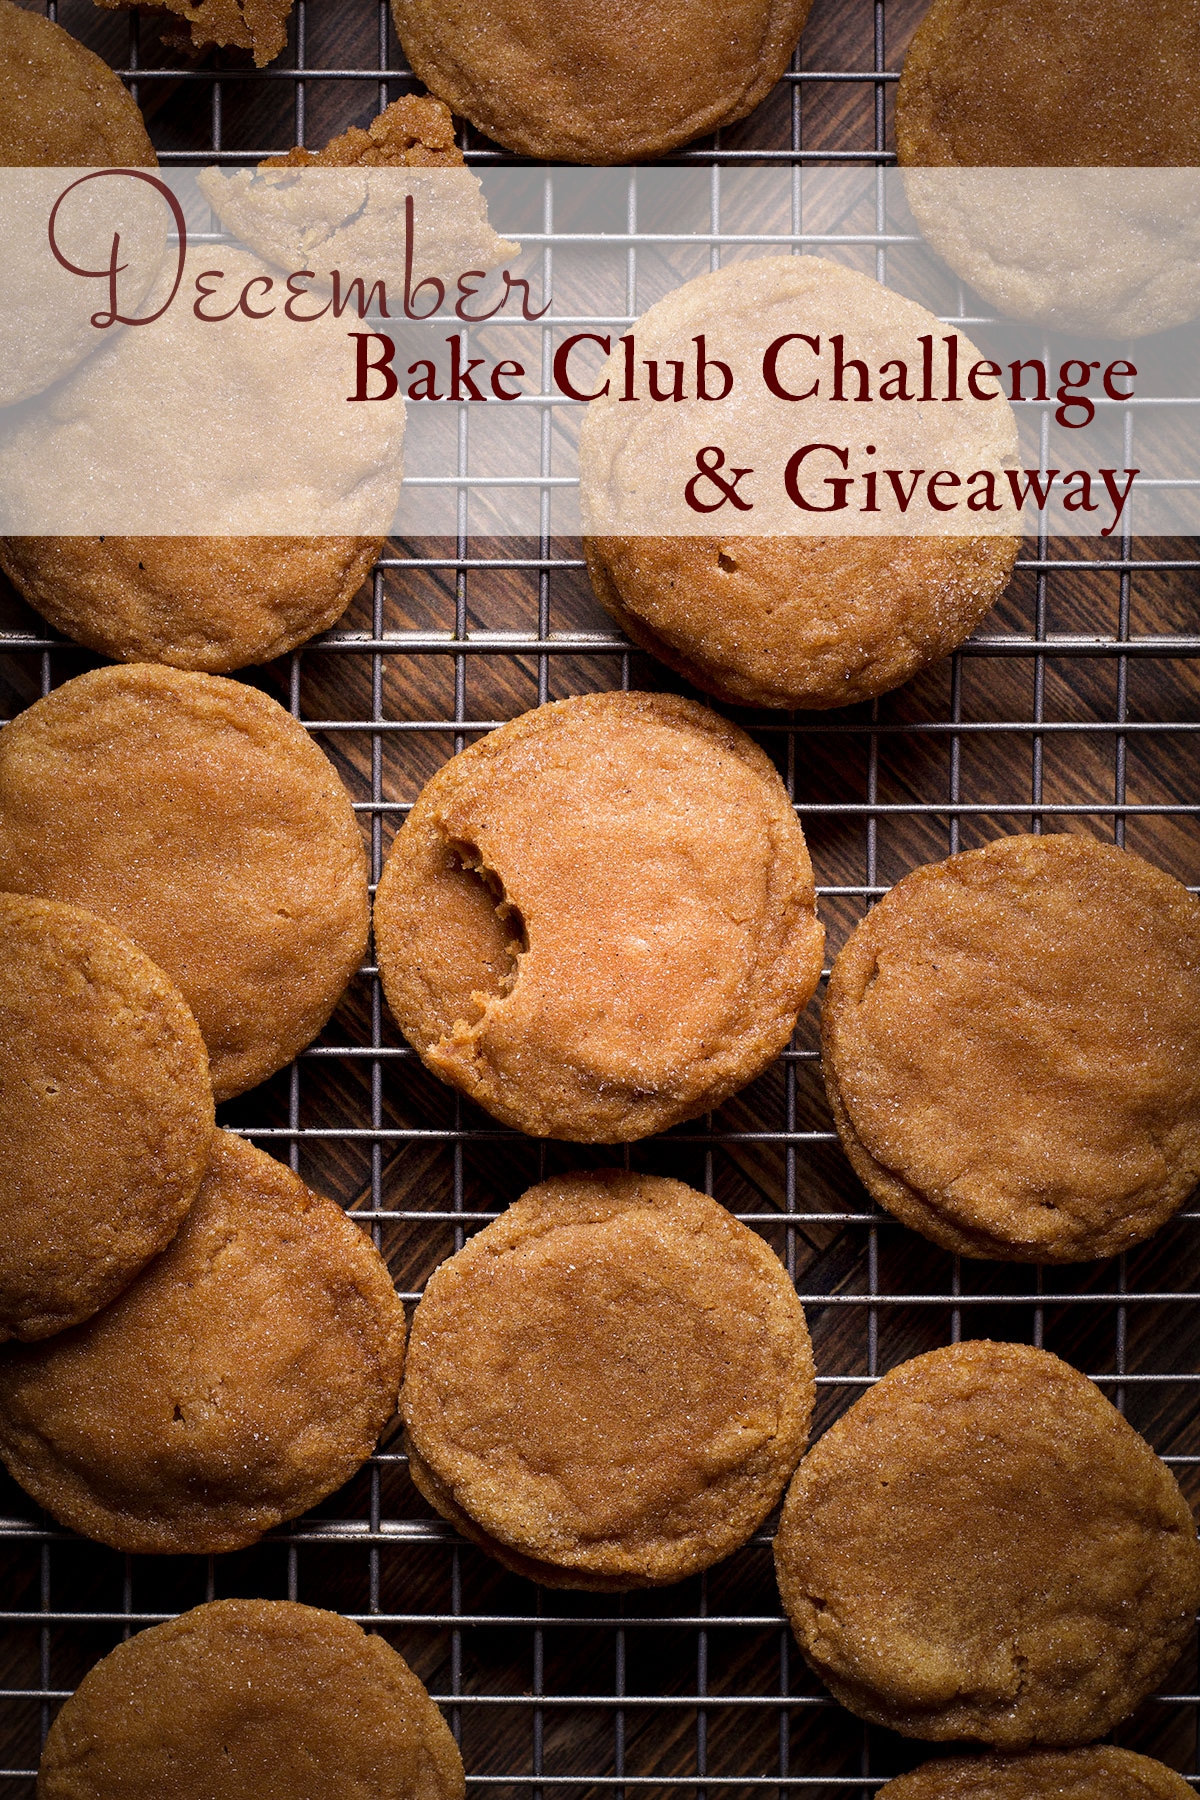 The December Bake Club challenge recipe is brown sugar cookies.